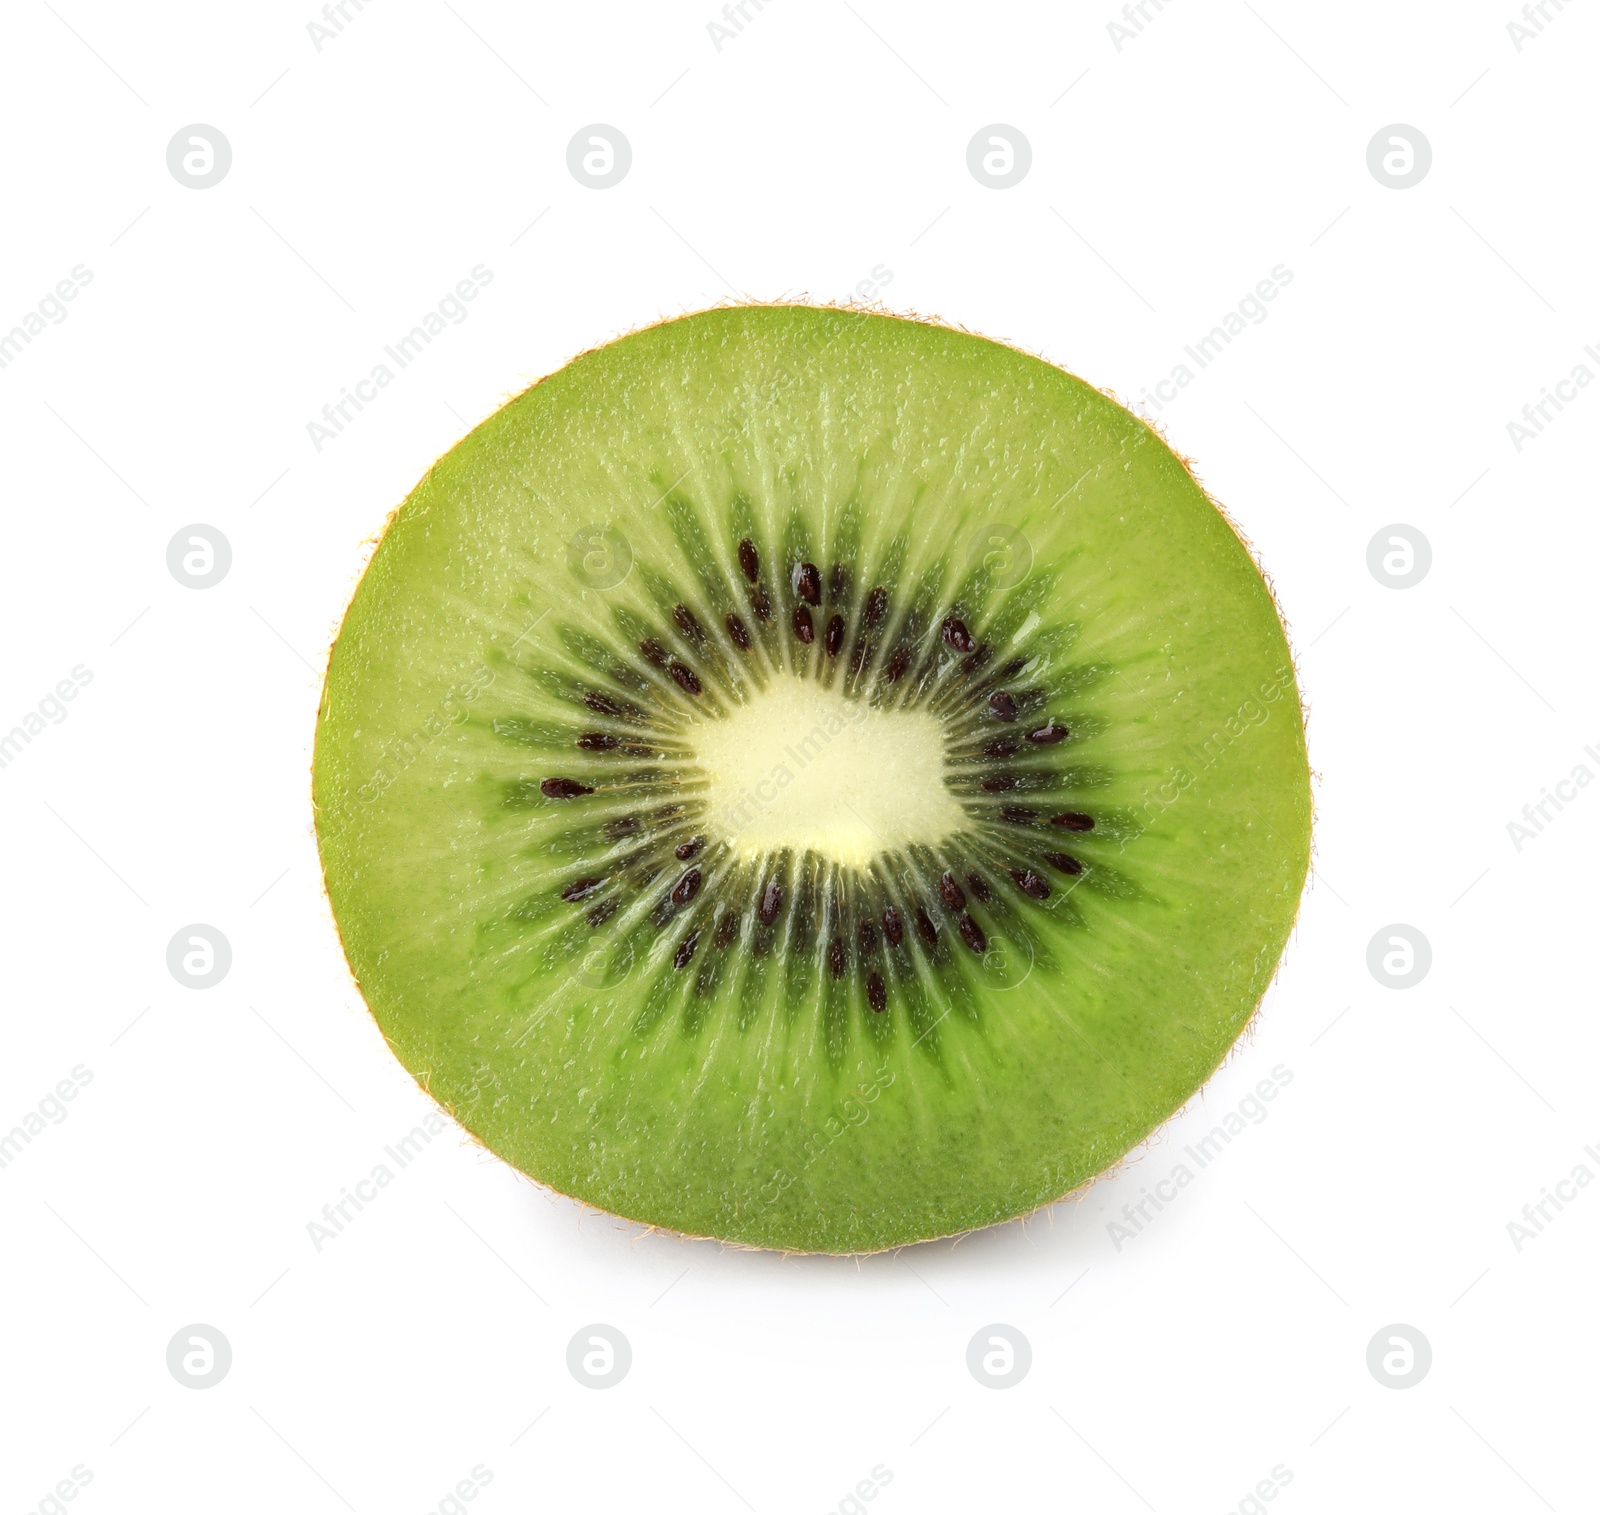 Photo of Half of fresh kiwi on white background